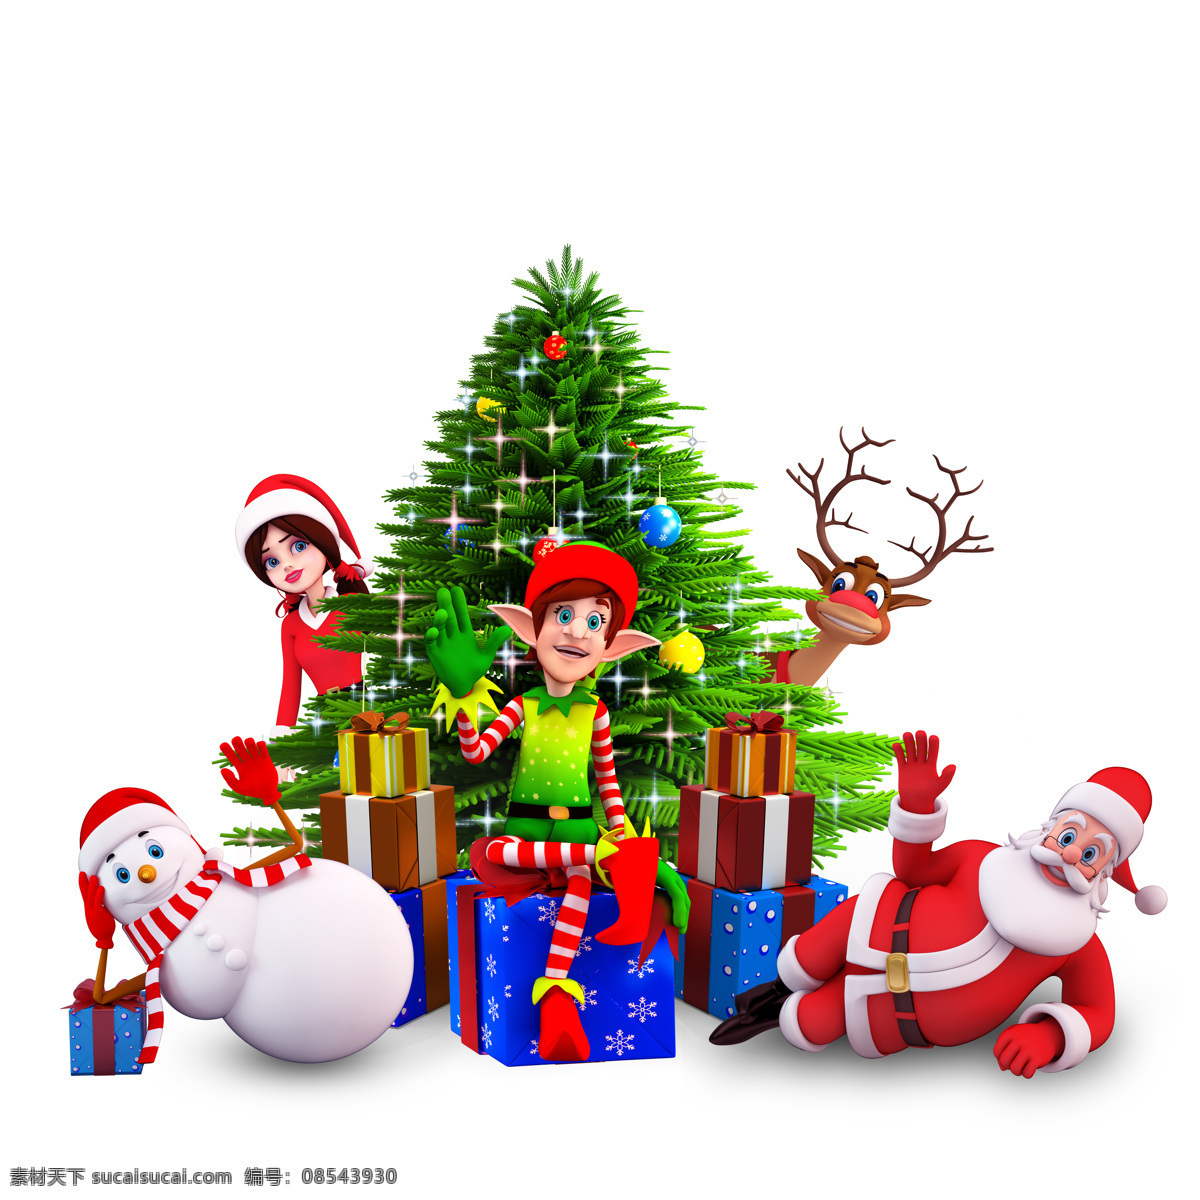 卡通 圣诞树 各种 圣诞 人物 圣诞人物 圣诞老人 鹿 雪人 节日庆典 生活百科